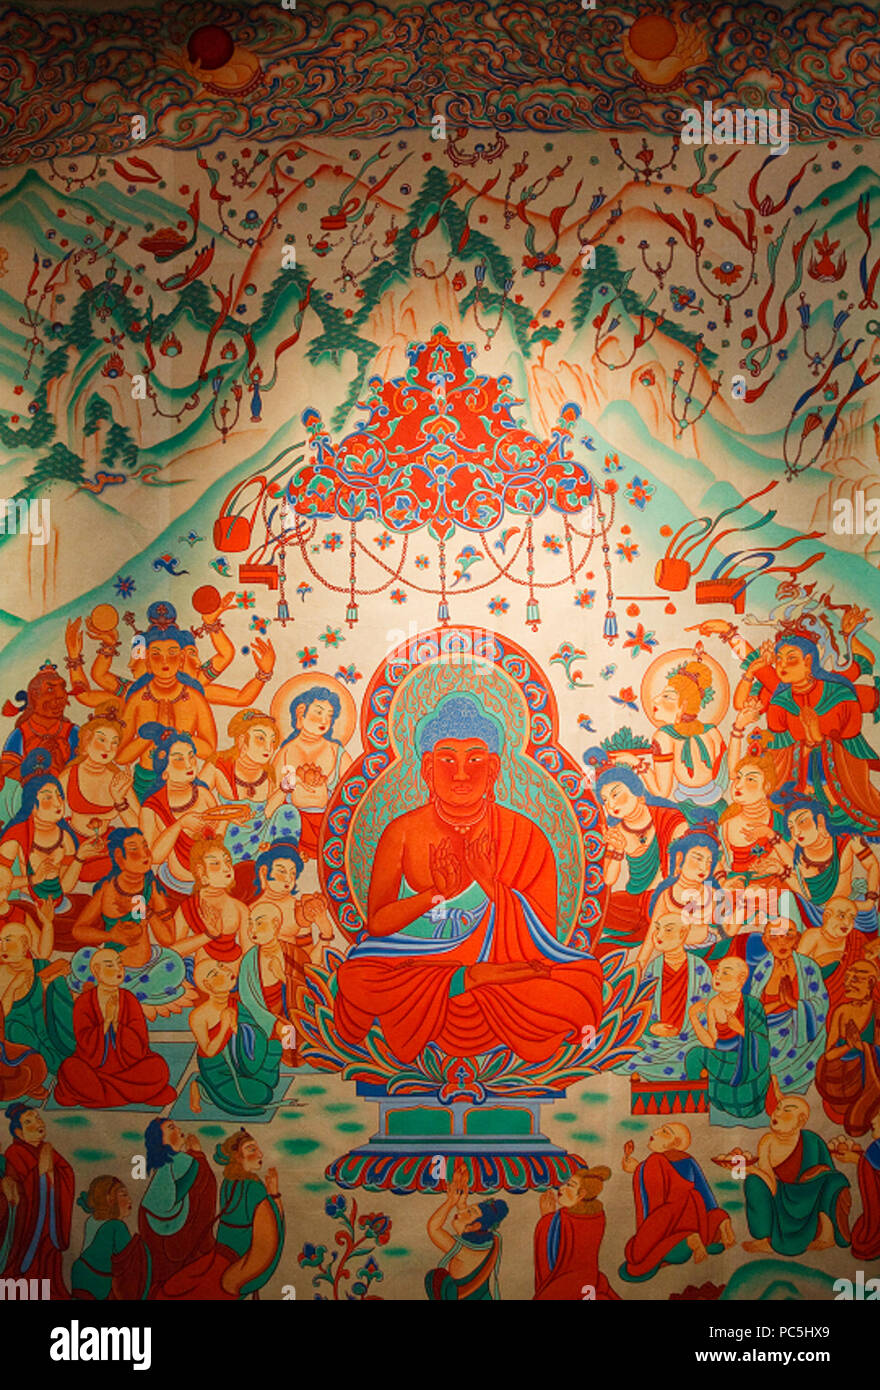 42 Amitabha Buddha Sukhavati Dunhuang Mogao Caves Stock Photo